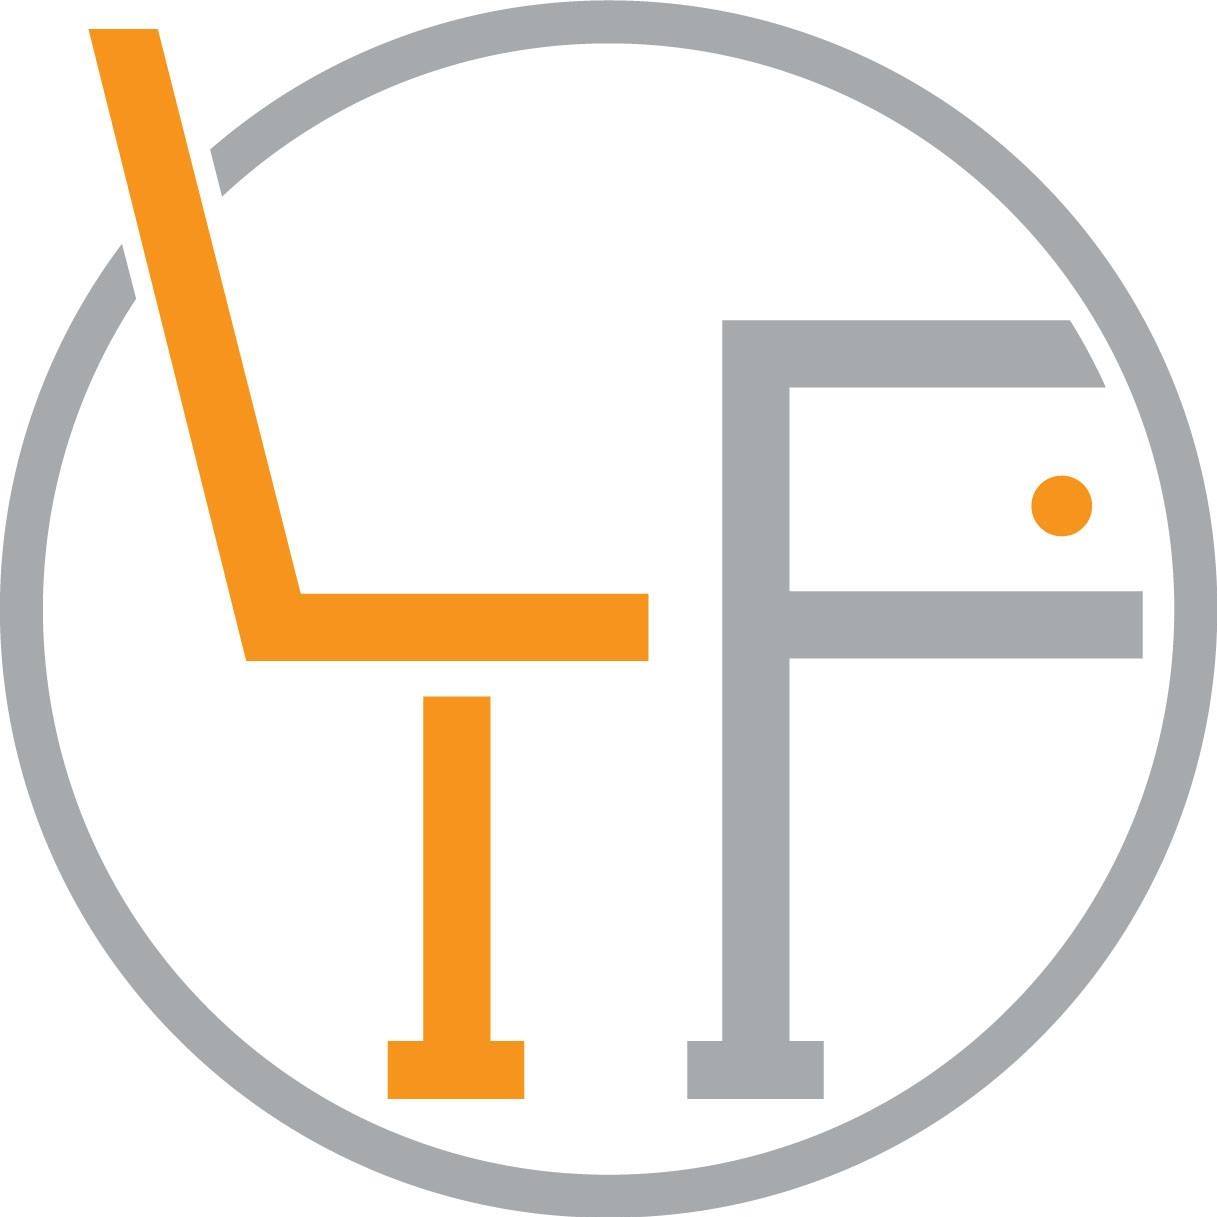 Linear Furnishings Pte. Ltd. logo